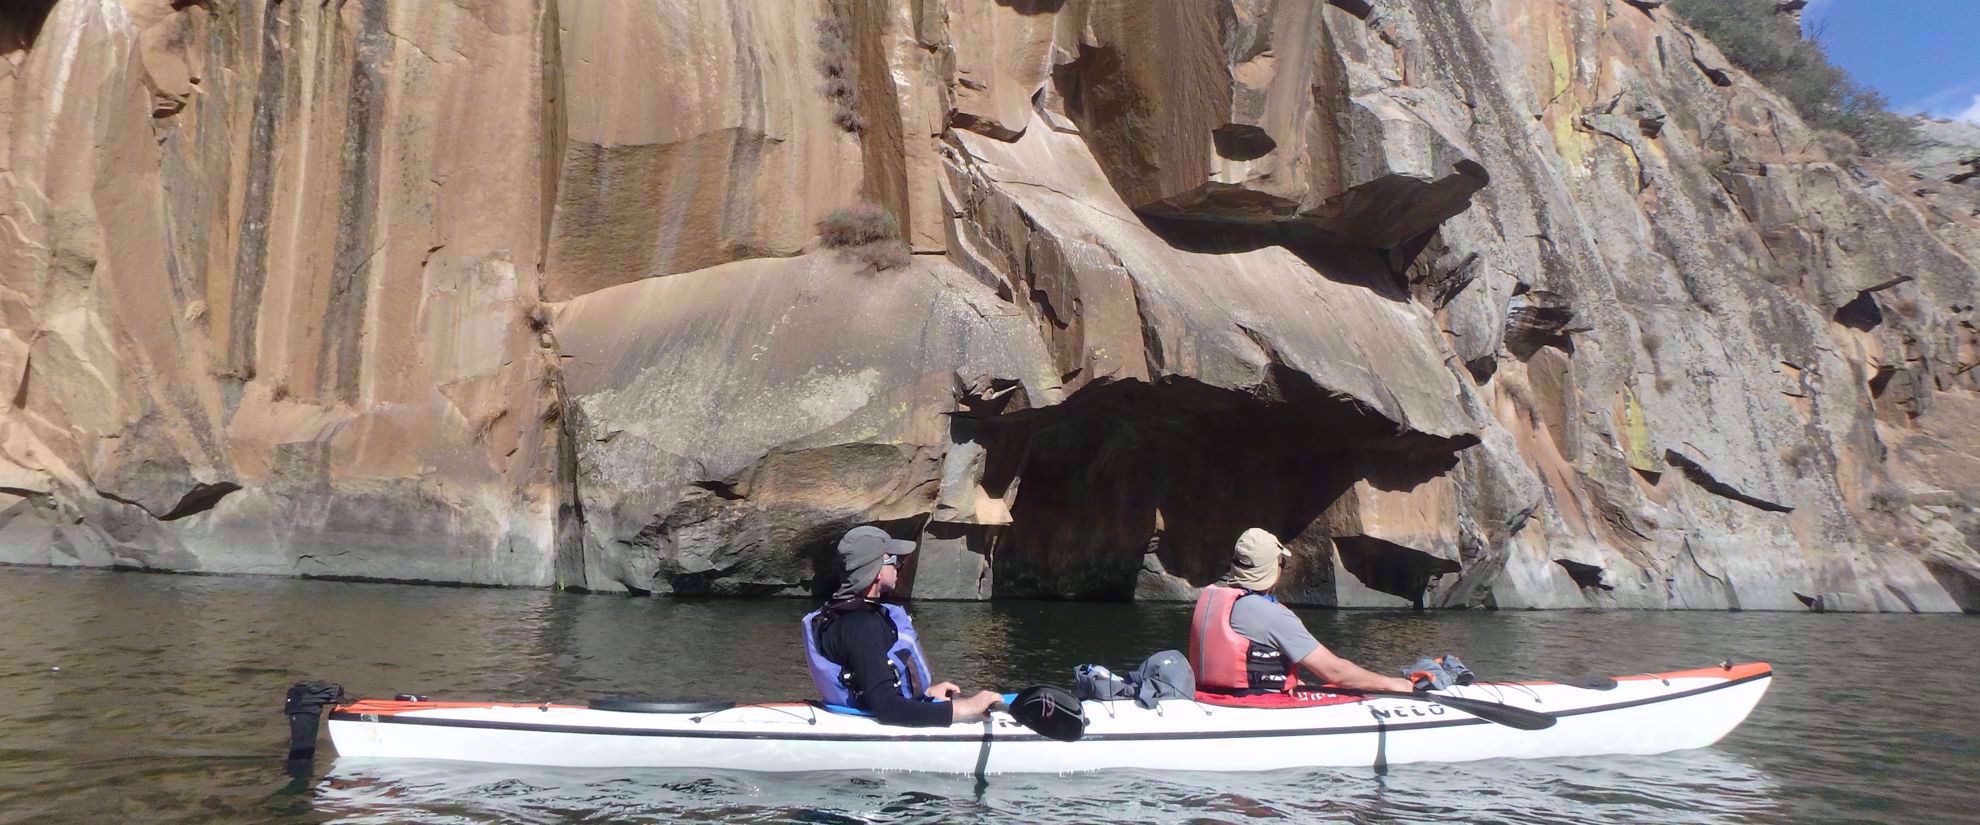 women on group tour kayaking douro valley